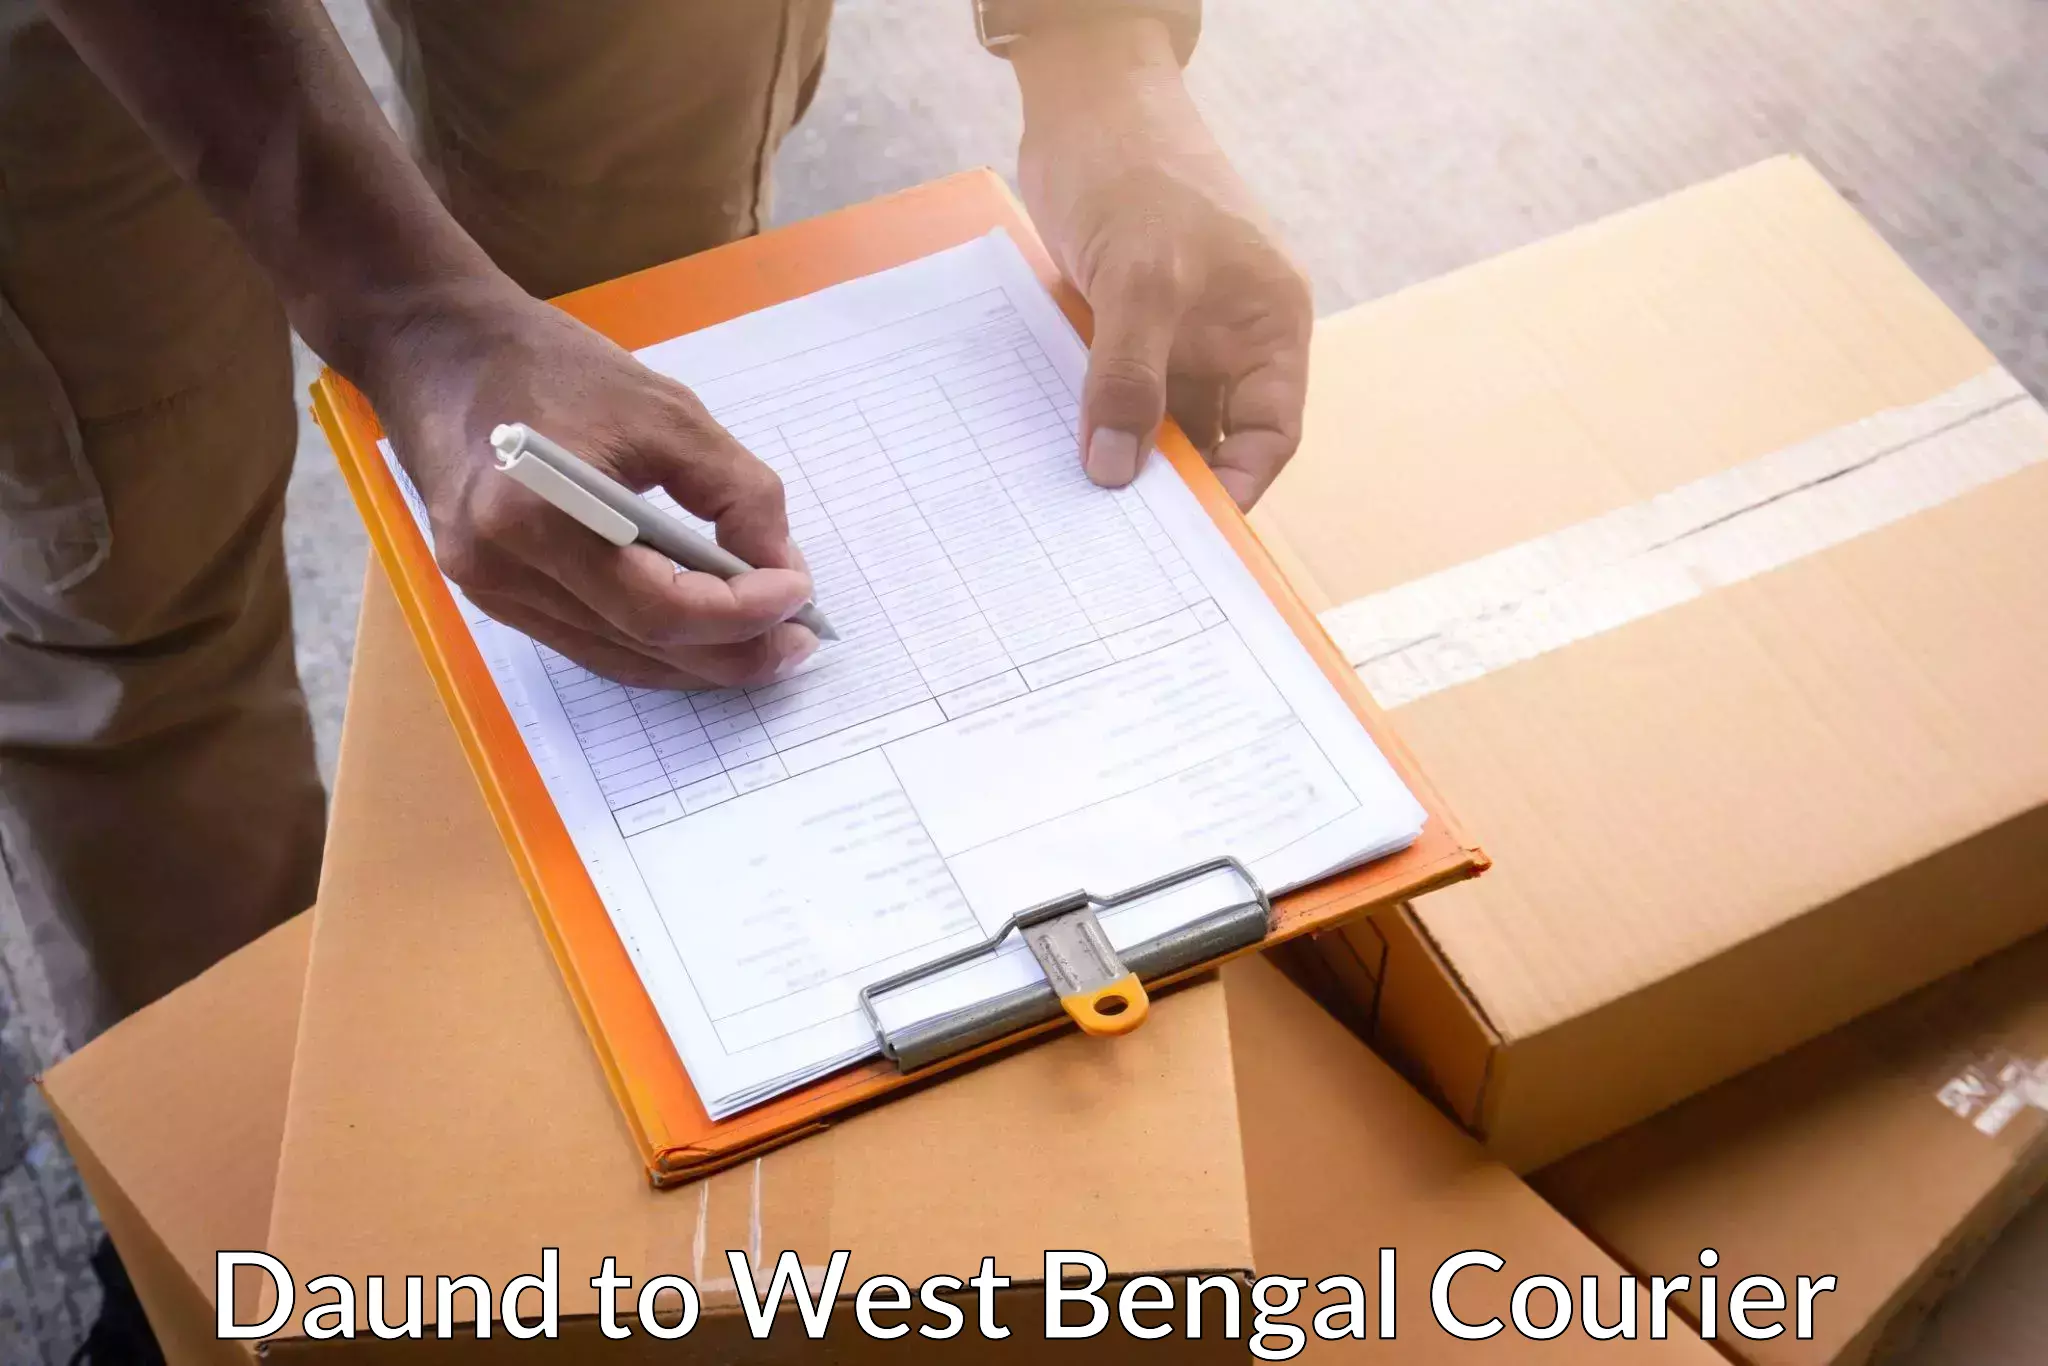 Weekend courier service Daund to Kolkata Port